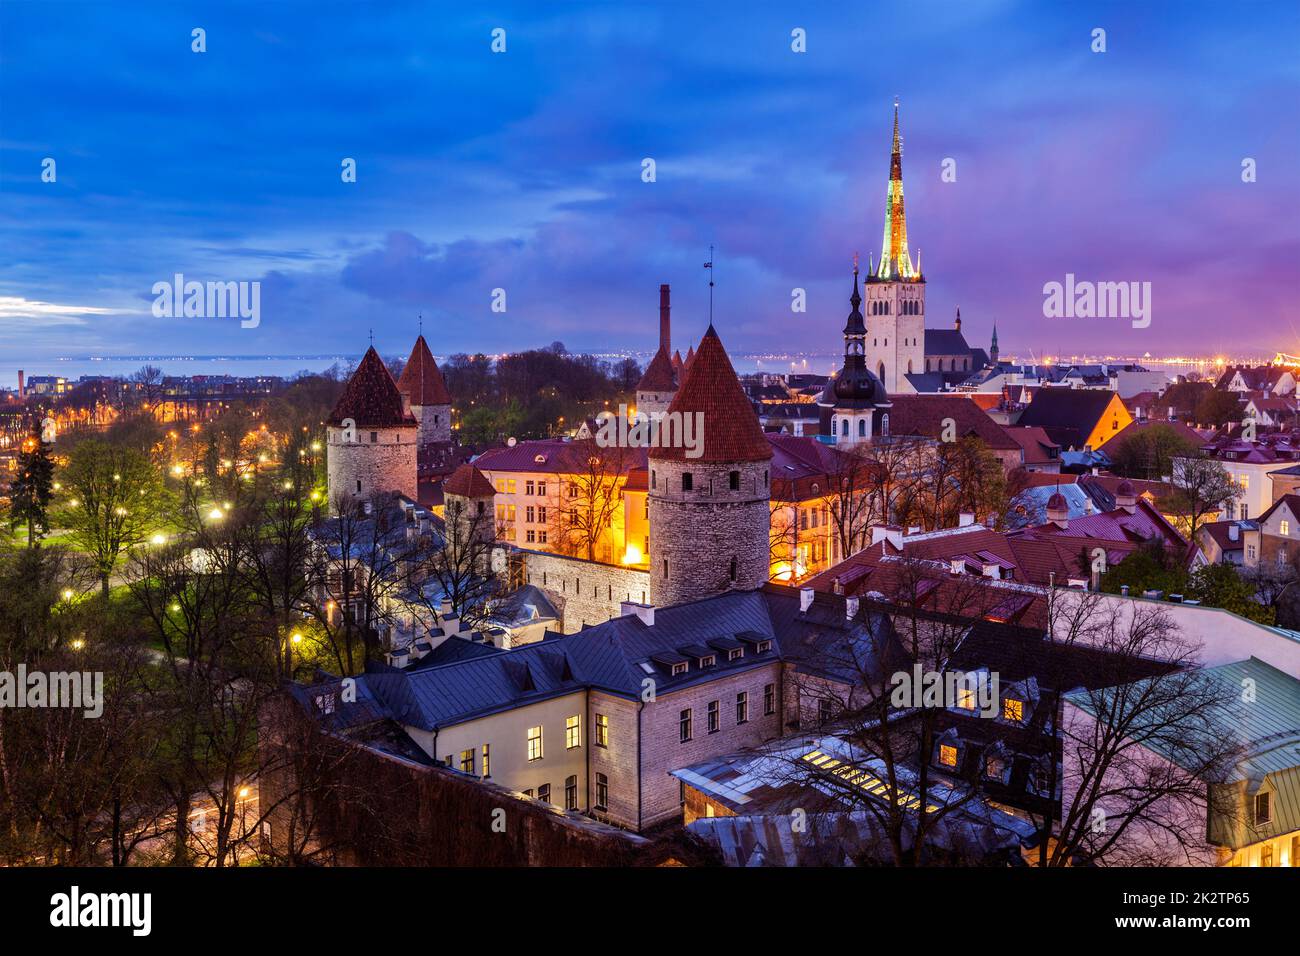 Vieille ville médiévale de Tallinn, Estonie Banque D'Images